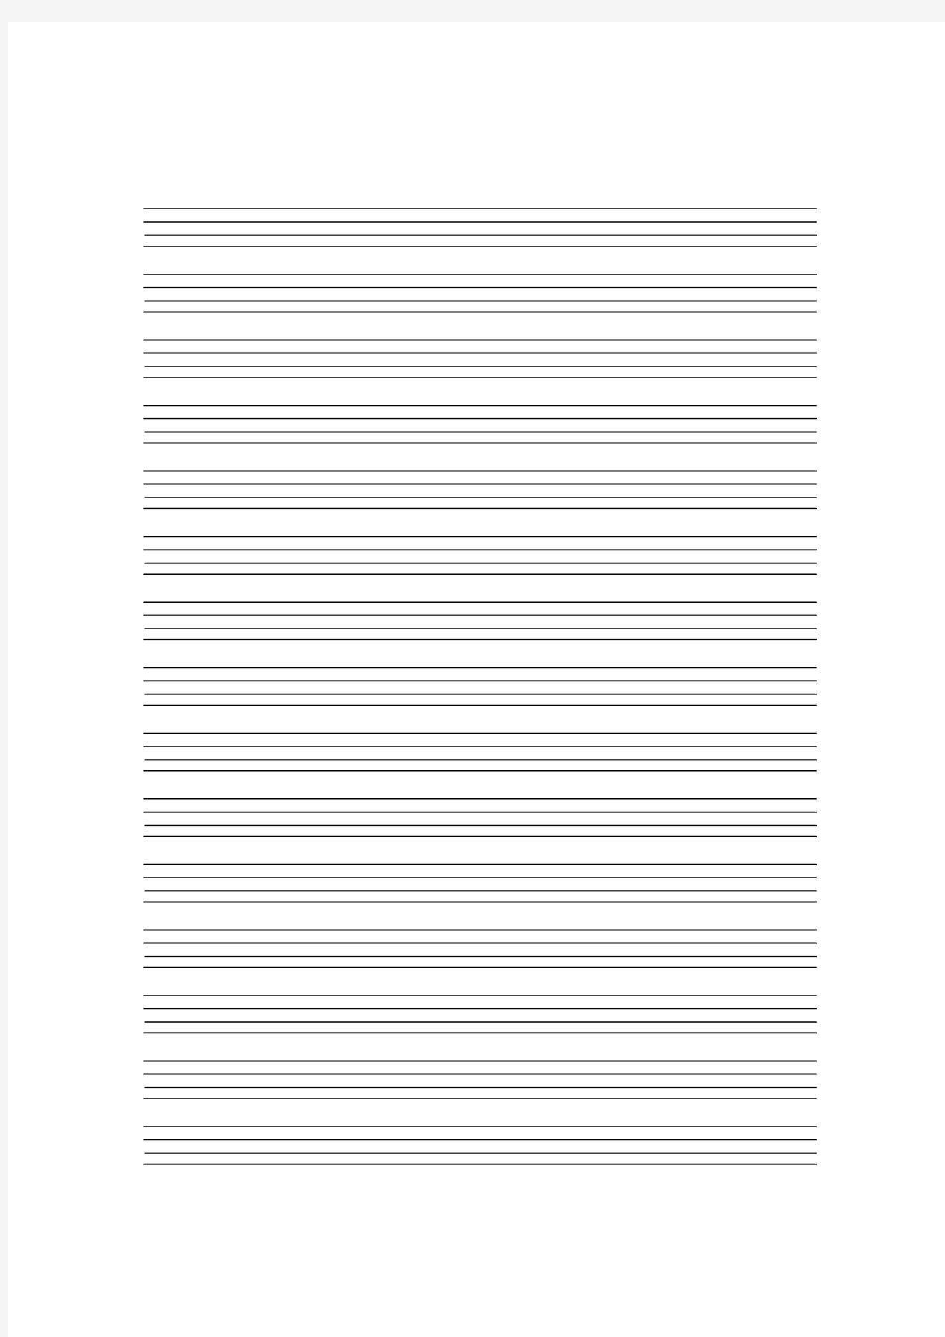 英语练字—四线三格空白纸(打印版)